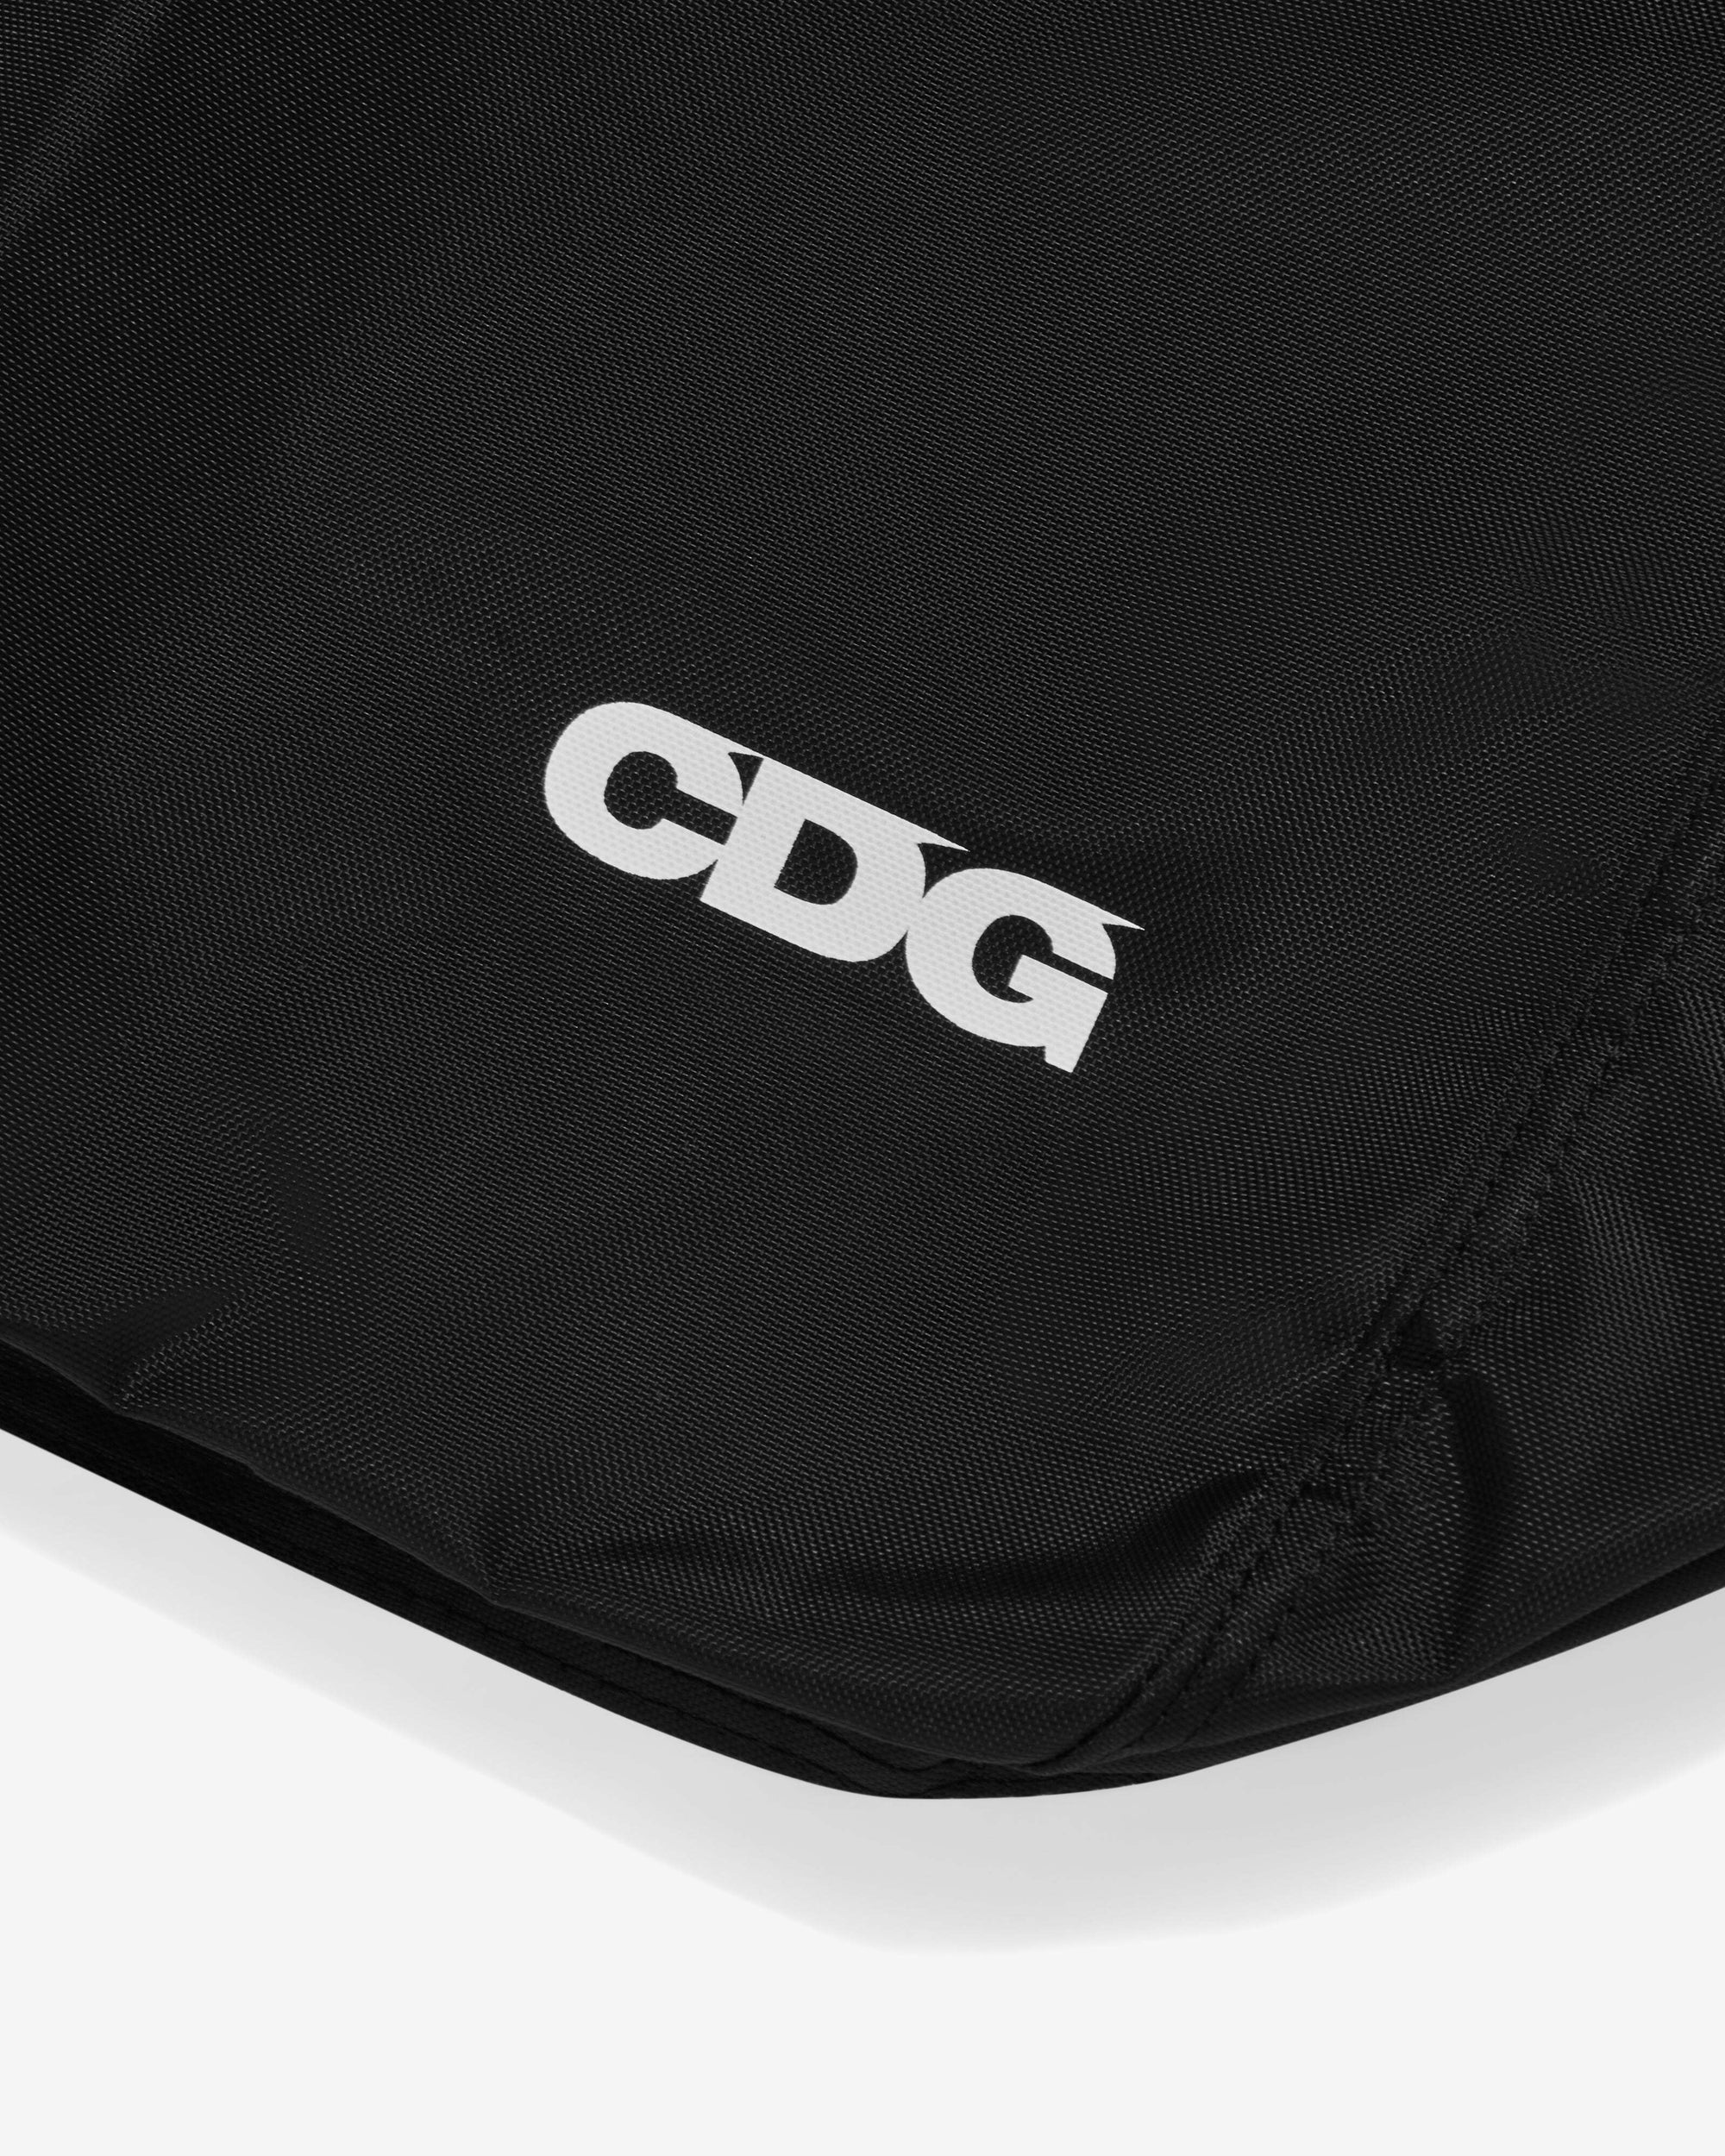 CDG - Shoulder Bag - (Black) view 4